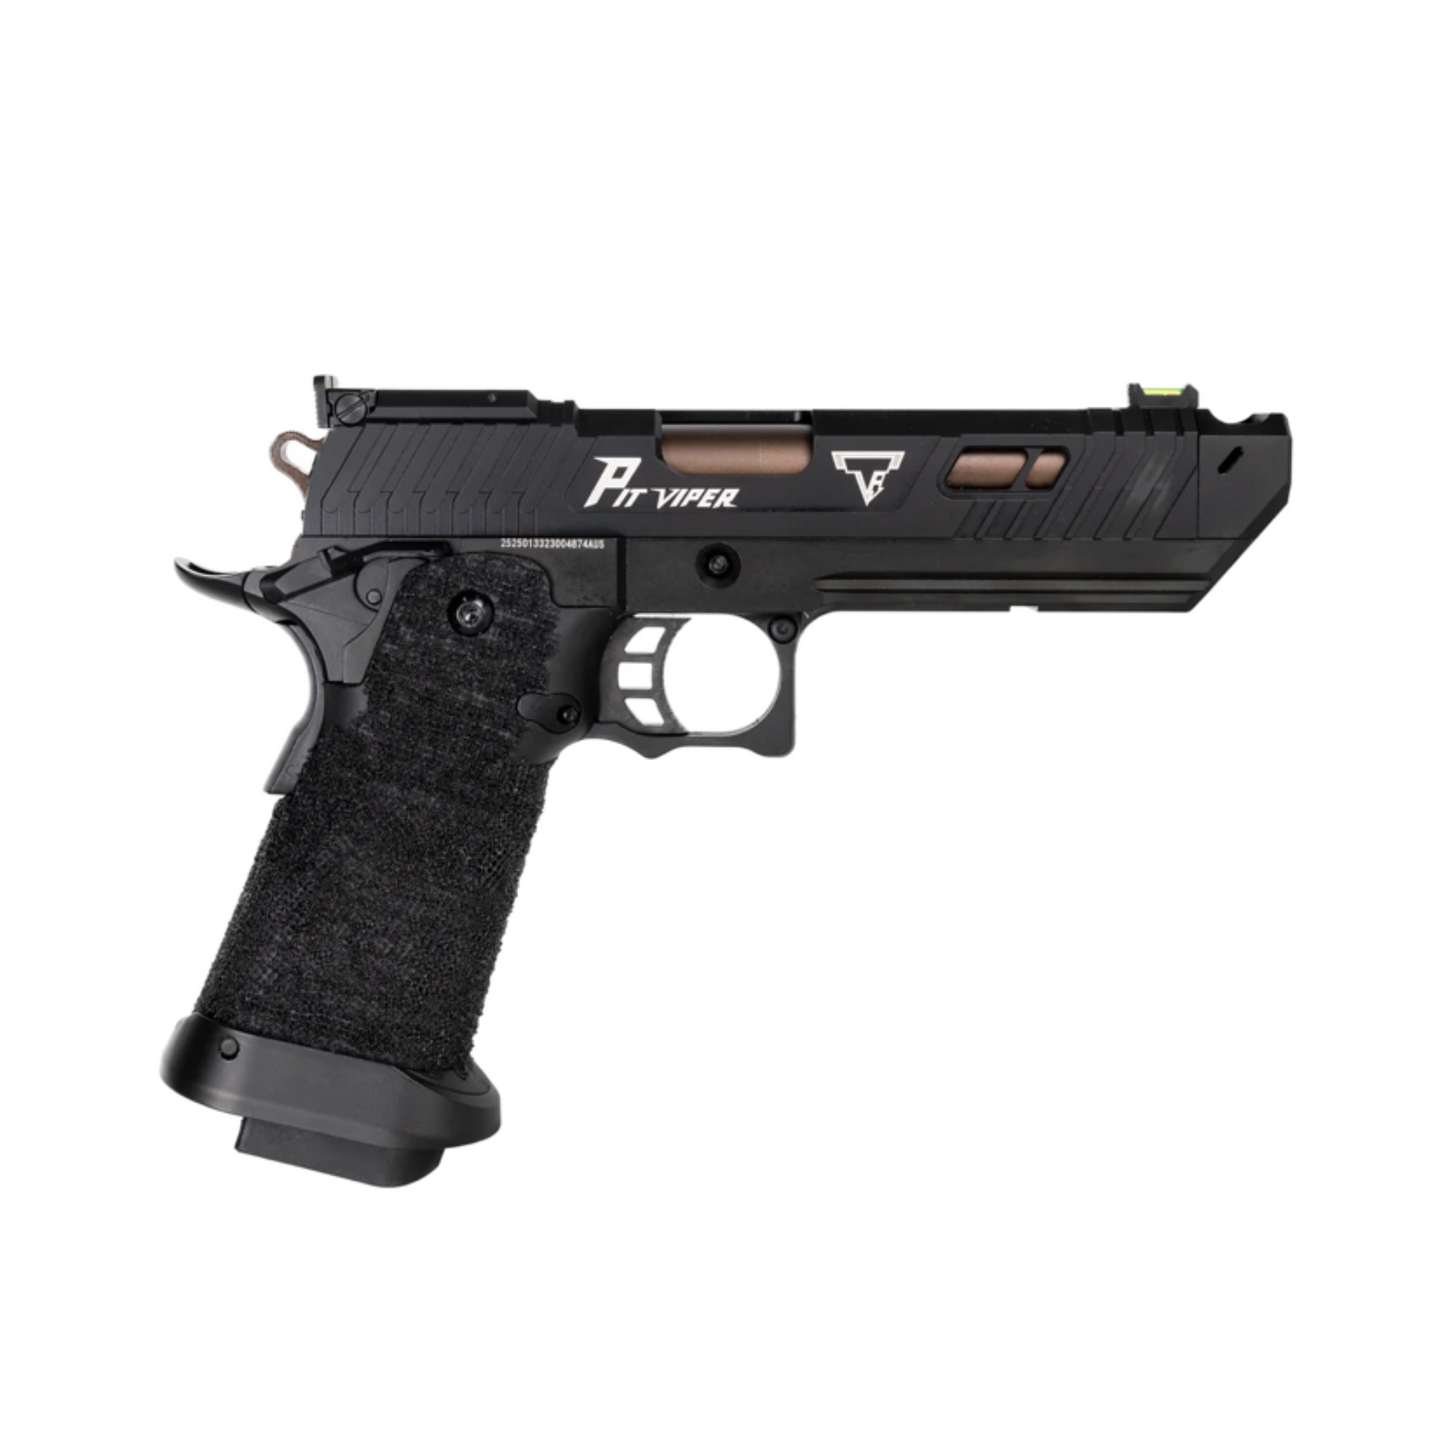 Golden Eagle 3356 TTI Pit Viper John Wick 5.1 Hi-Capa Green Gas Pistole – Gel Blaster